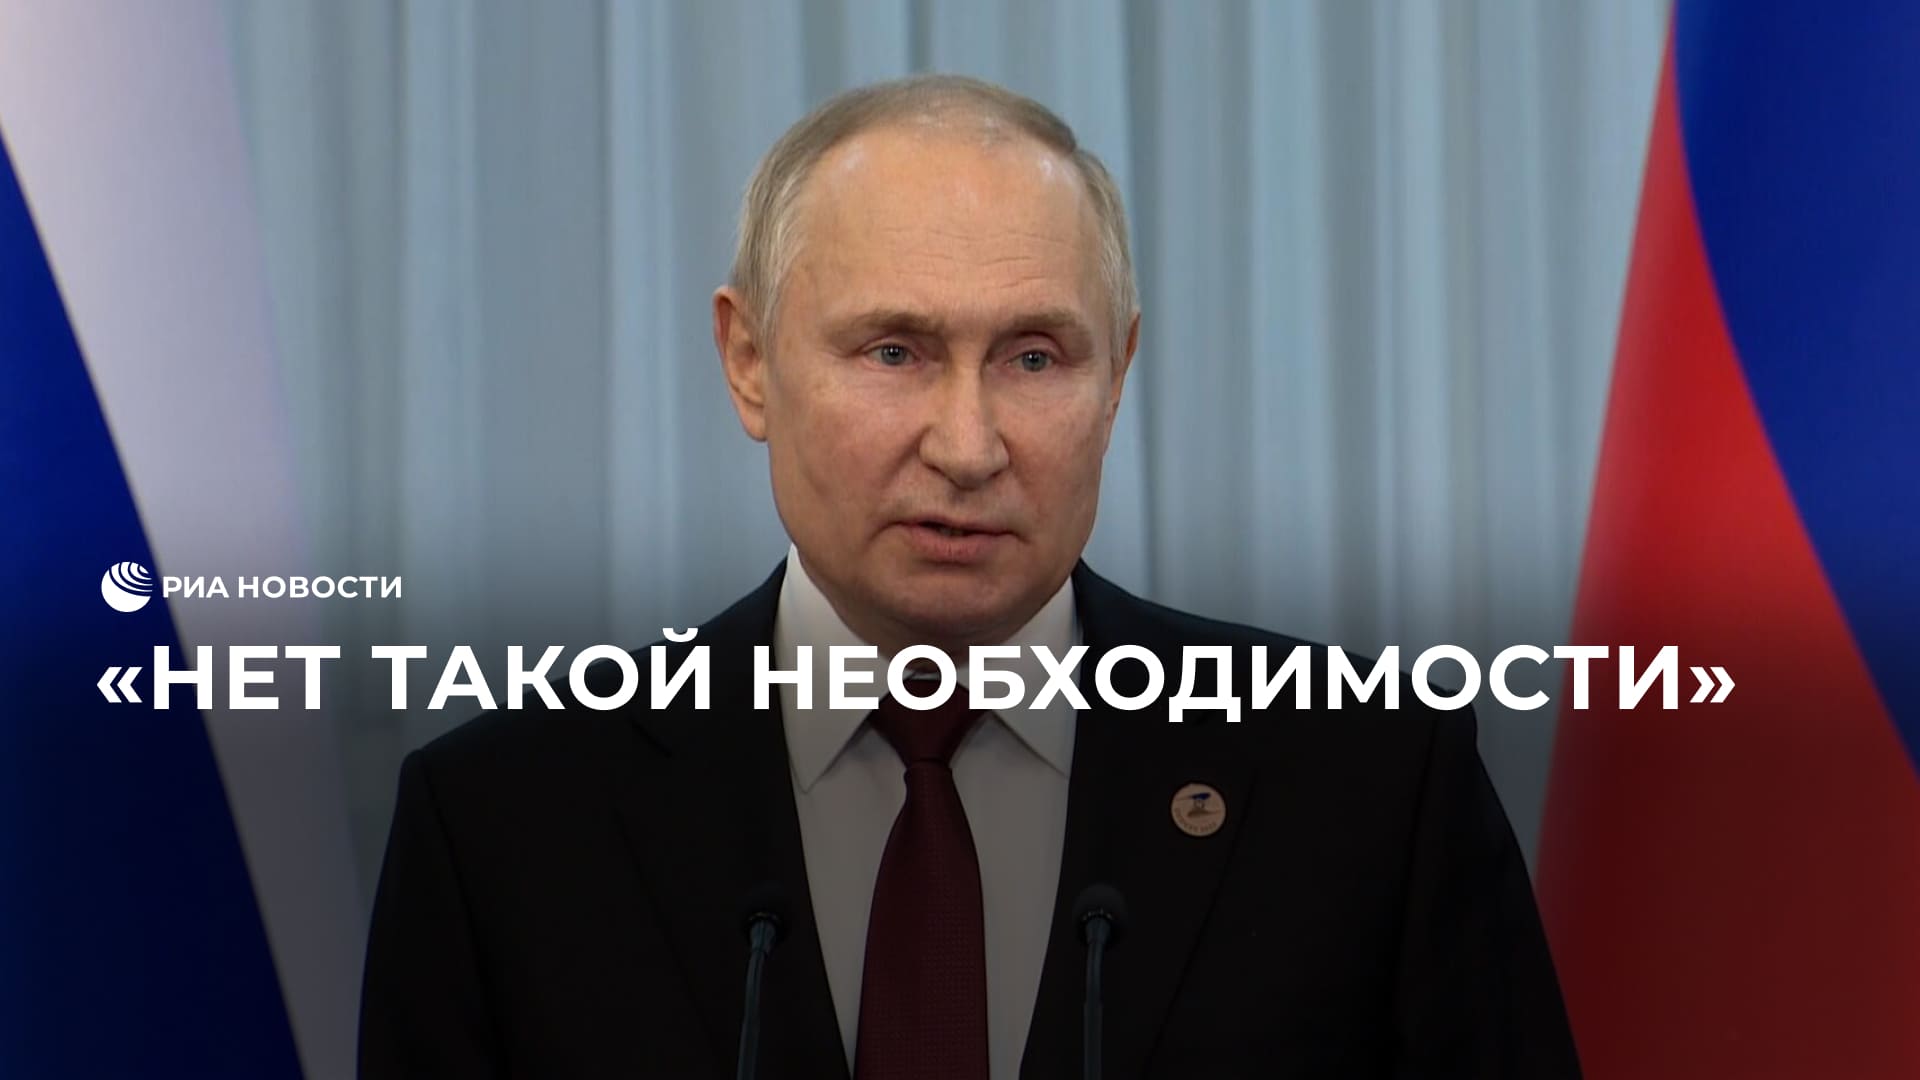 Речи о дополнительной мобилизации не идет, заявил Путин